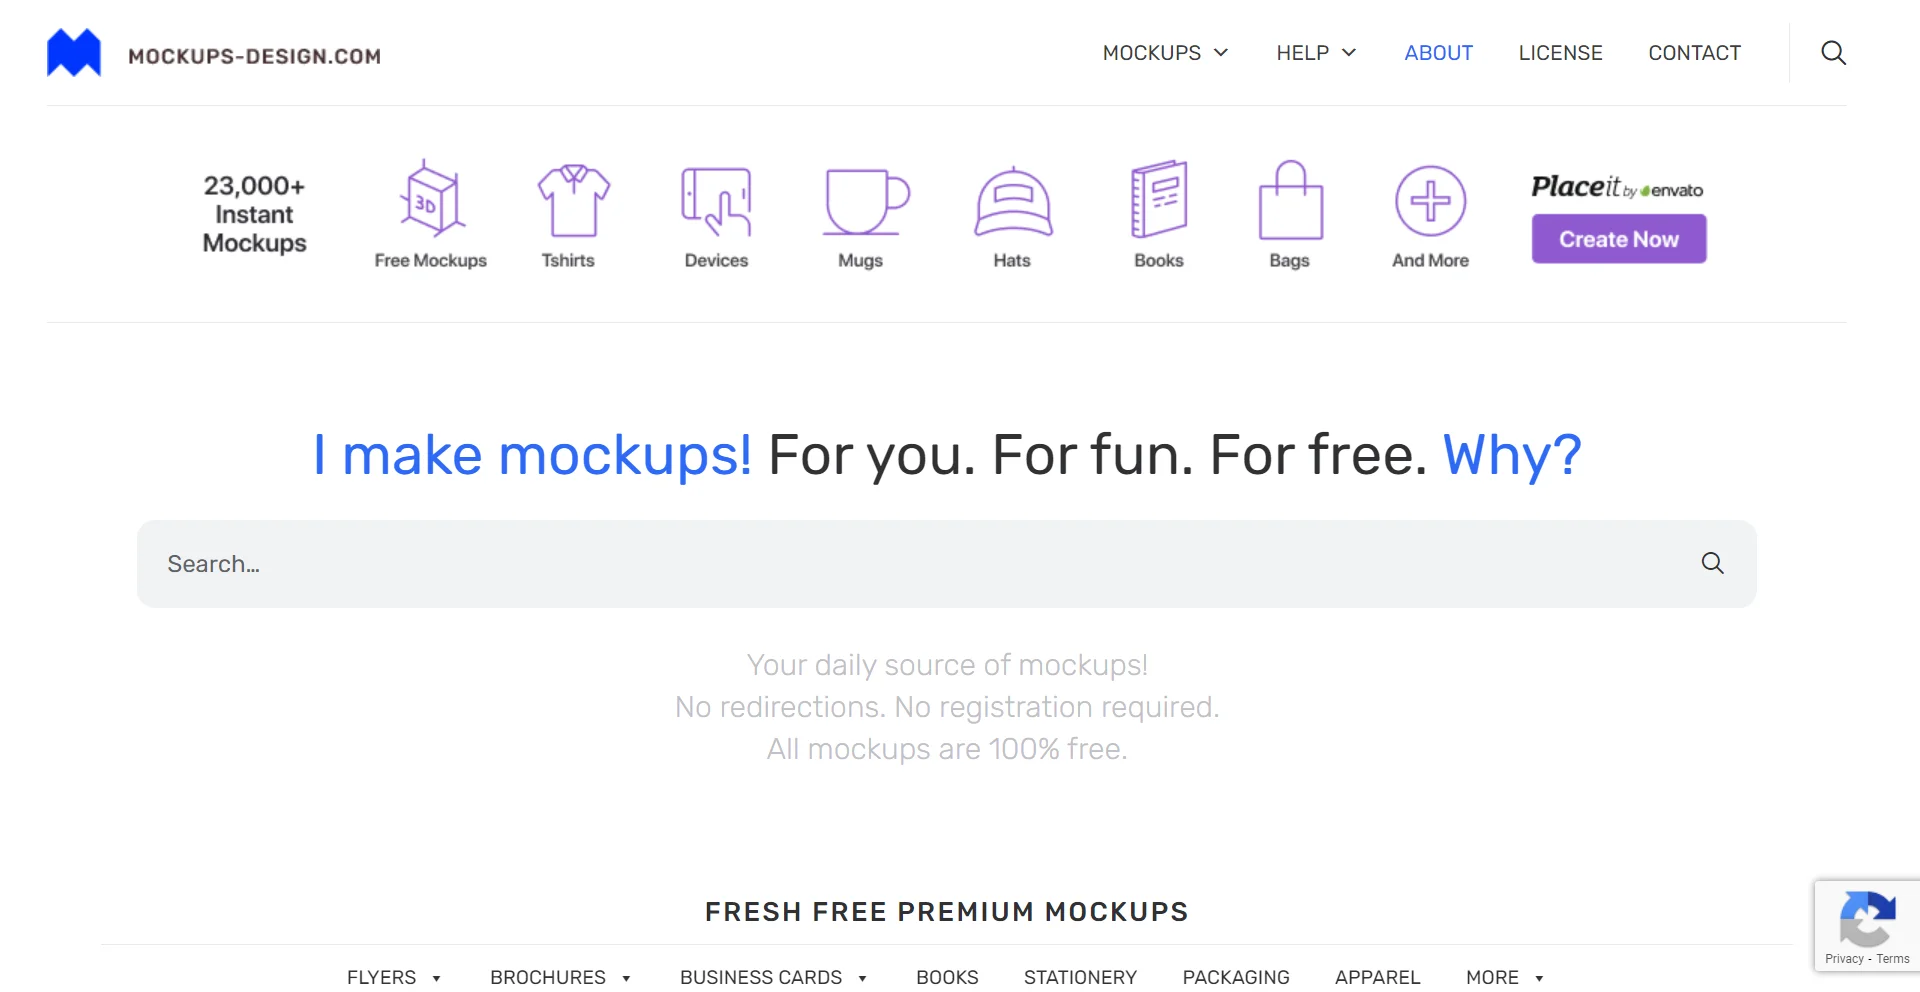 Mockups-Design